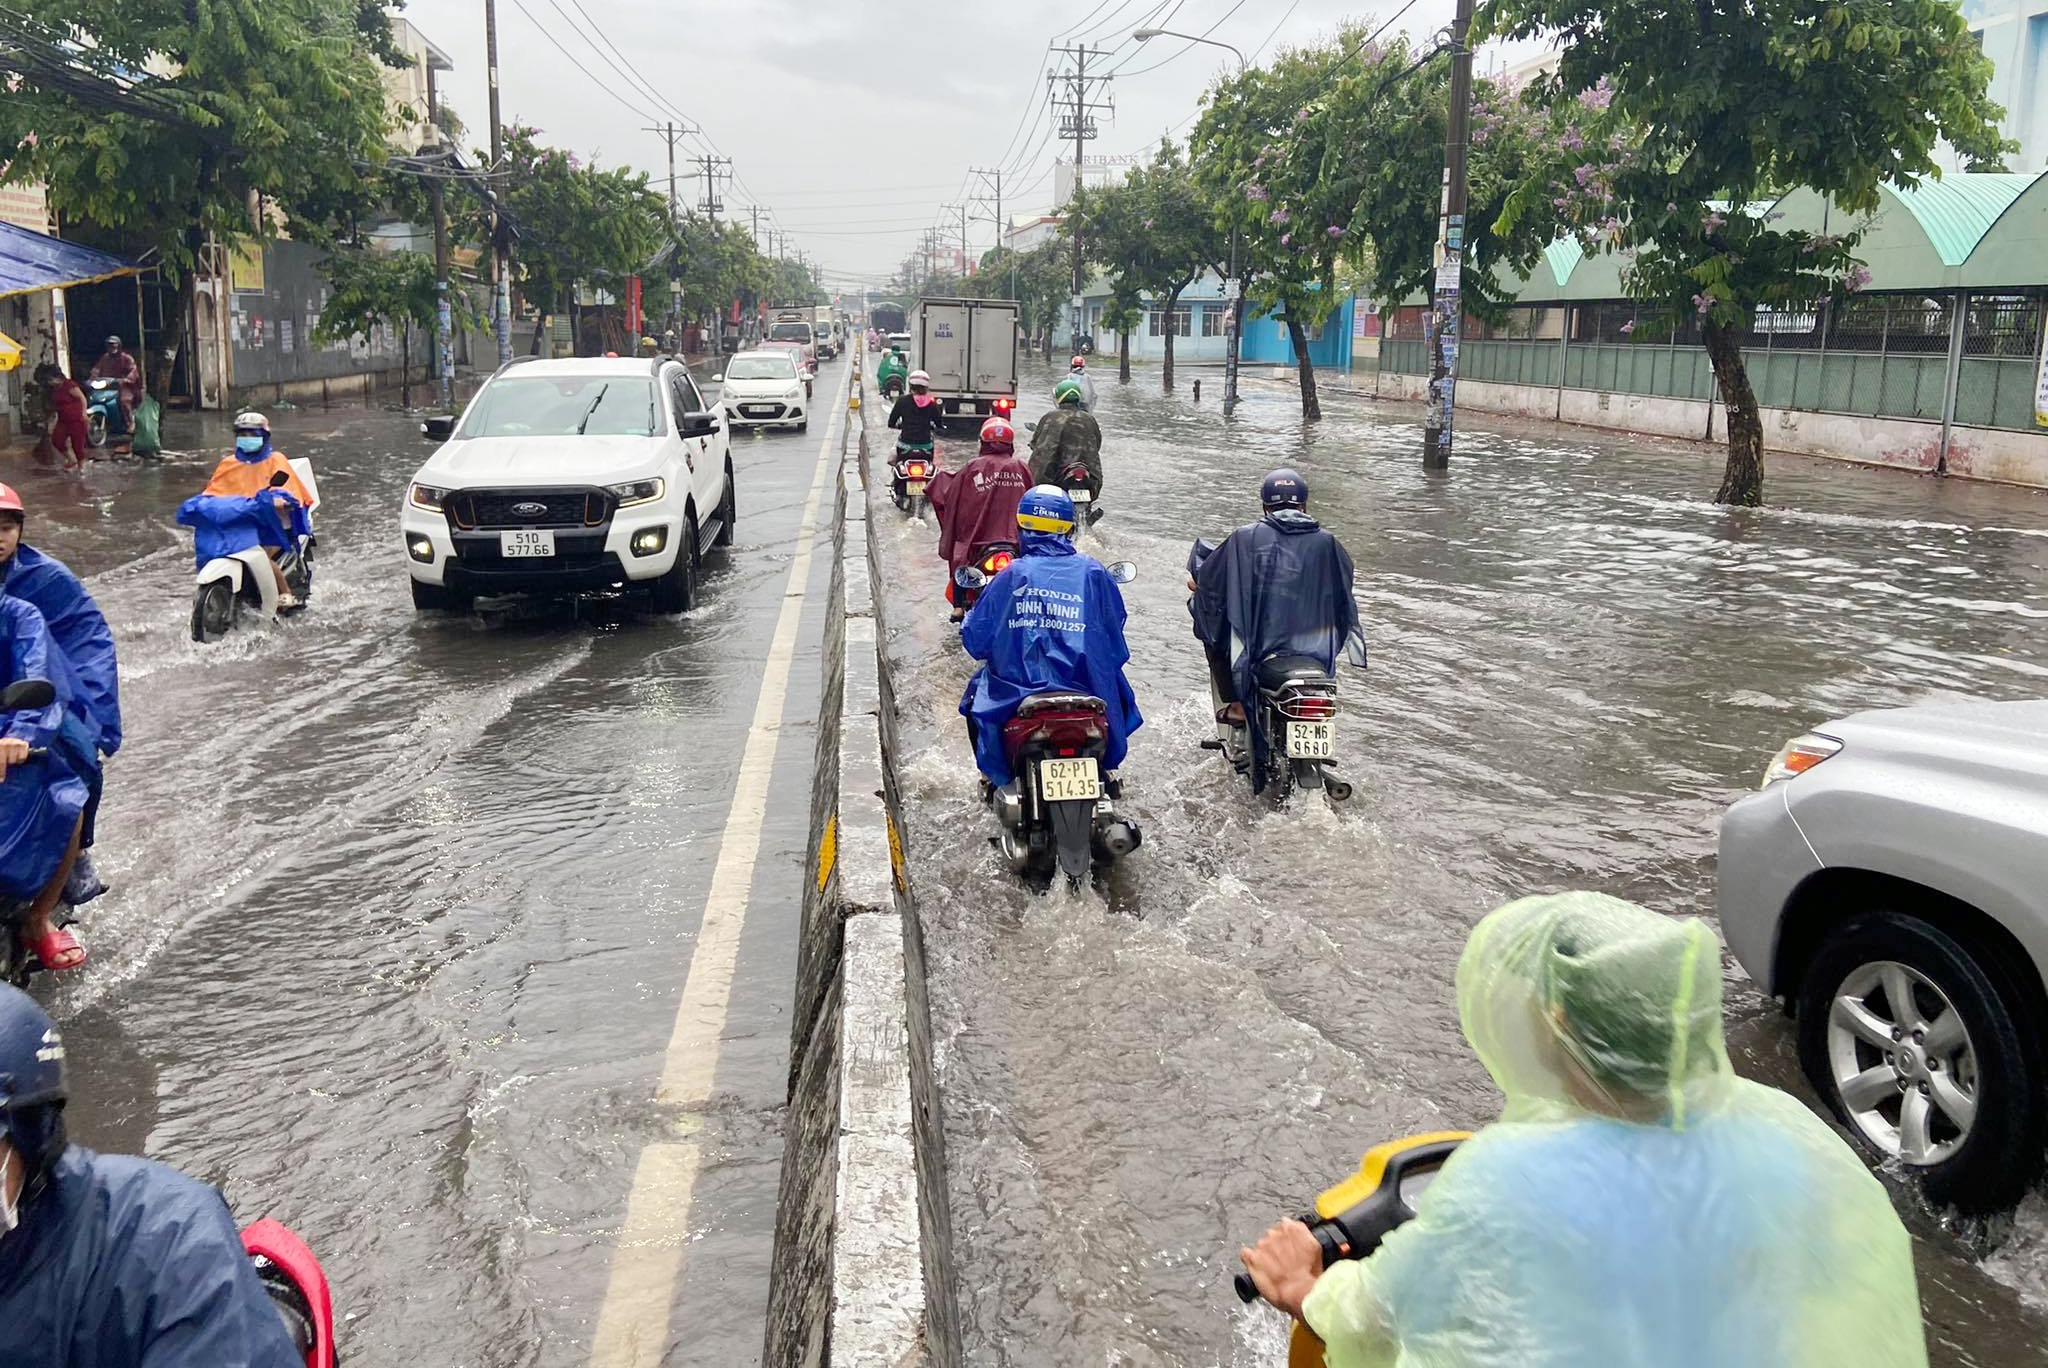 Sáng 25/5, cơn mưa lớn kéo dài từ sáng đến trưa khiến nhiều tuyến đường, khu vực ở TP.HCM bị ngập sâu trong nước.